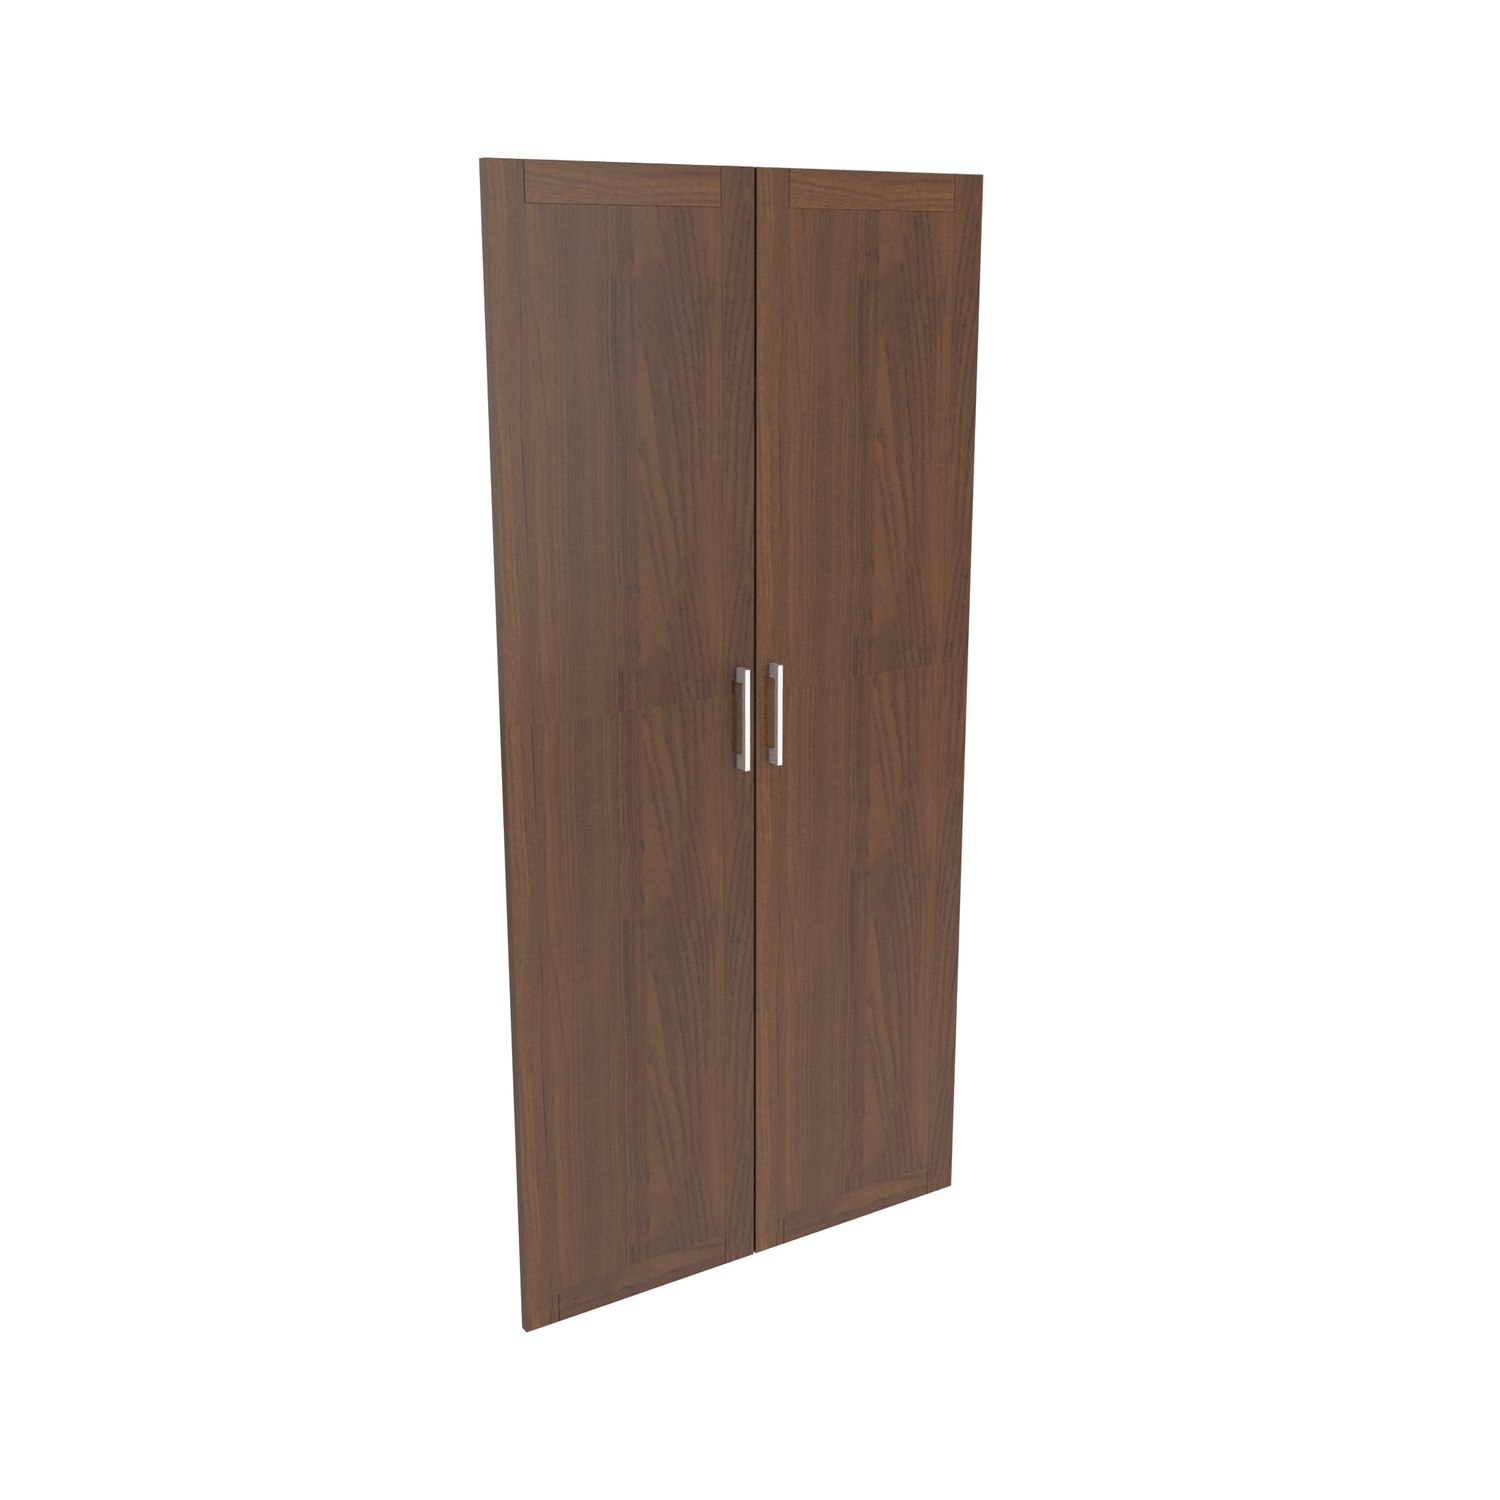 Наполнение двухстворчатого шкафа с деревянными дверьми и вешалкой Lion 25552